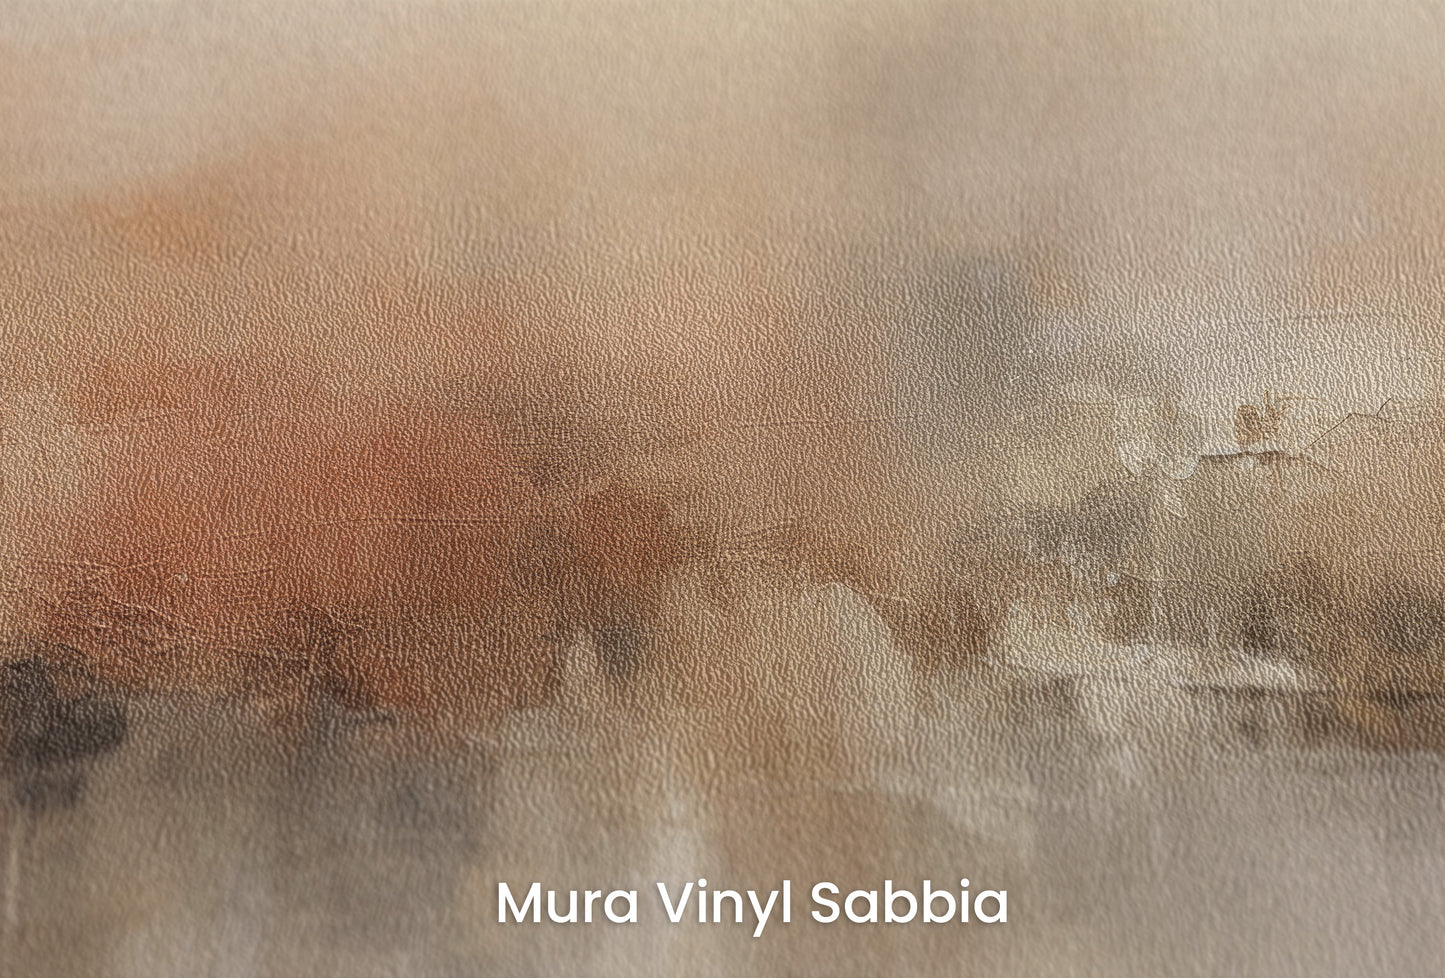 Zbliżenie na artystyczną fototapetę o nazwie AUTUMN HAZE HARMONY na podłożu Mura Vinyl Sabbia struktura grubego ziarna piasku.